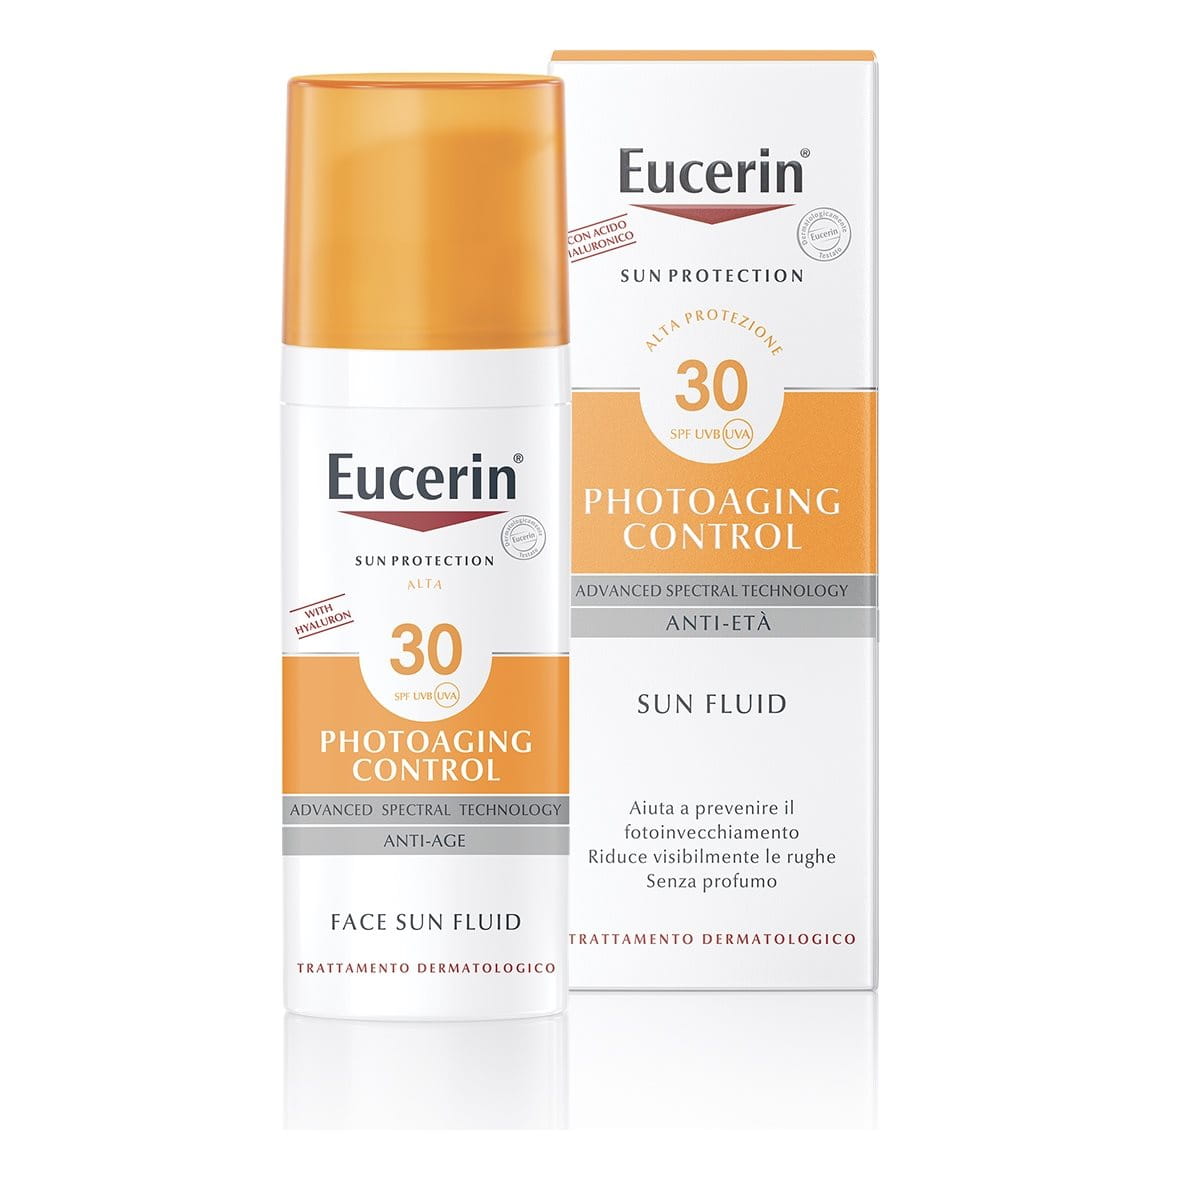 Eucerin Photoaging Control Sun Fluid SPF 30